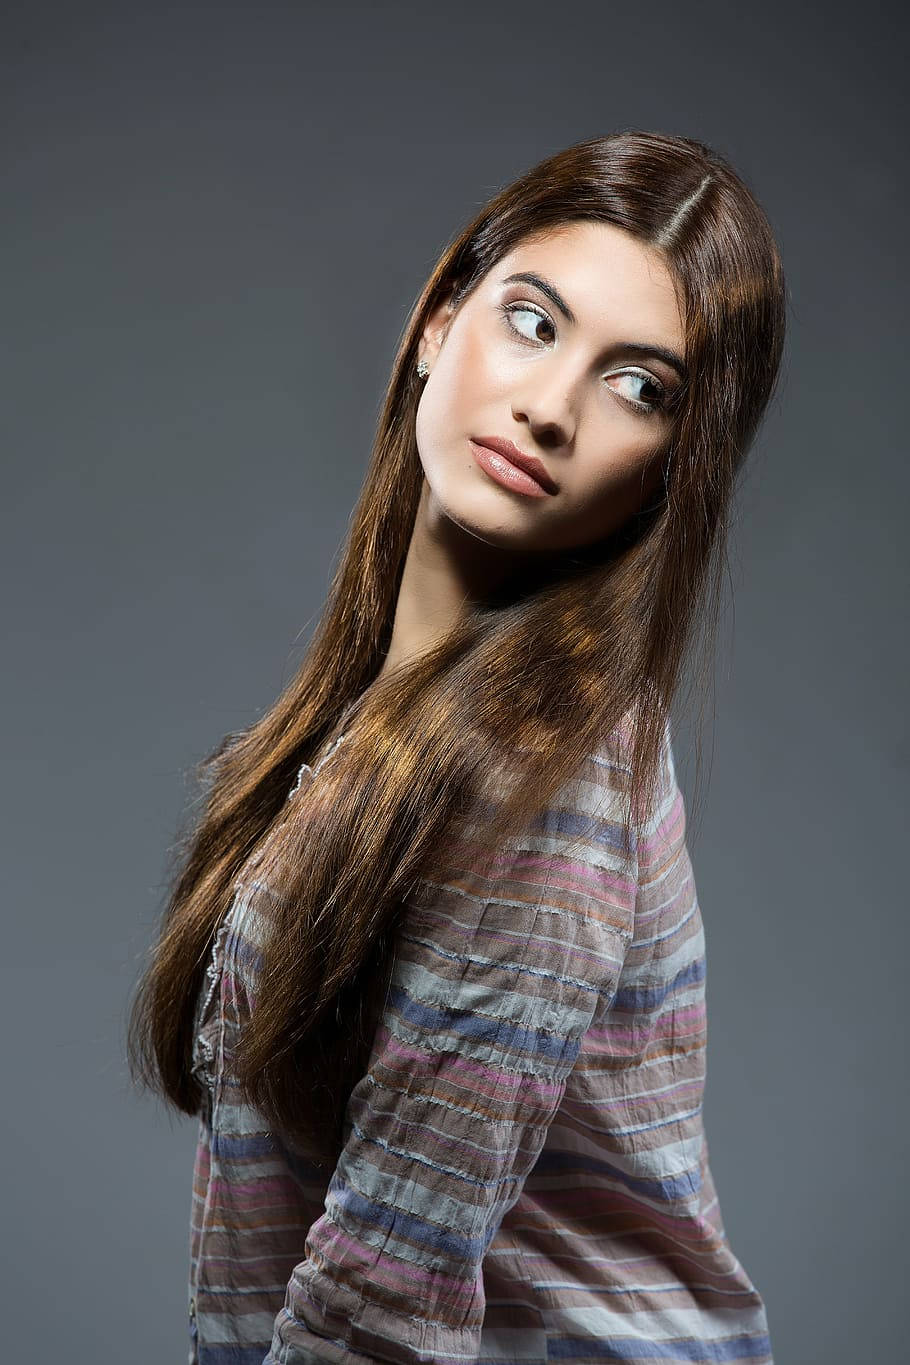 Long Brunette Hair Female Model Wallpaper